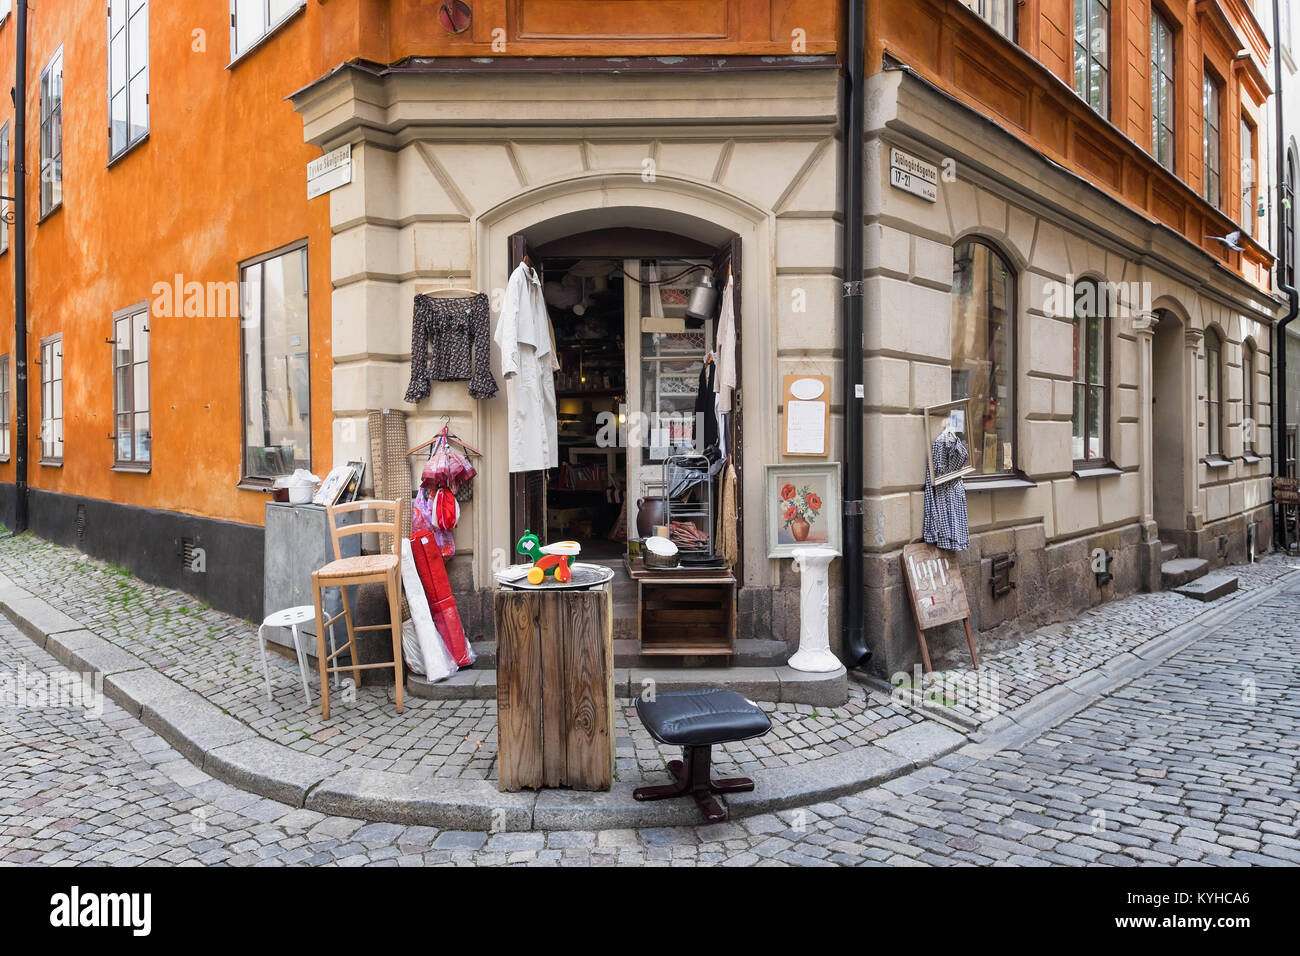 Stockholm Shop Verkauf von gebrauchten Vintage Kleidung und Hausrat auf dem Bürgersteig außerhalb angezeigt. Lage in der malerischen Gamla Stan oder die Alte Stadt Stockfoto